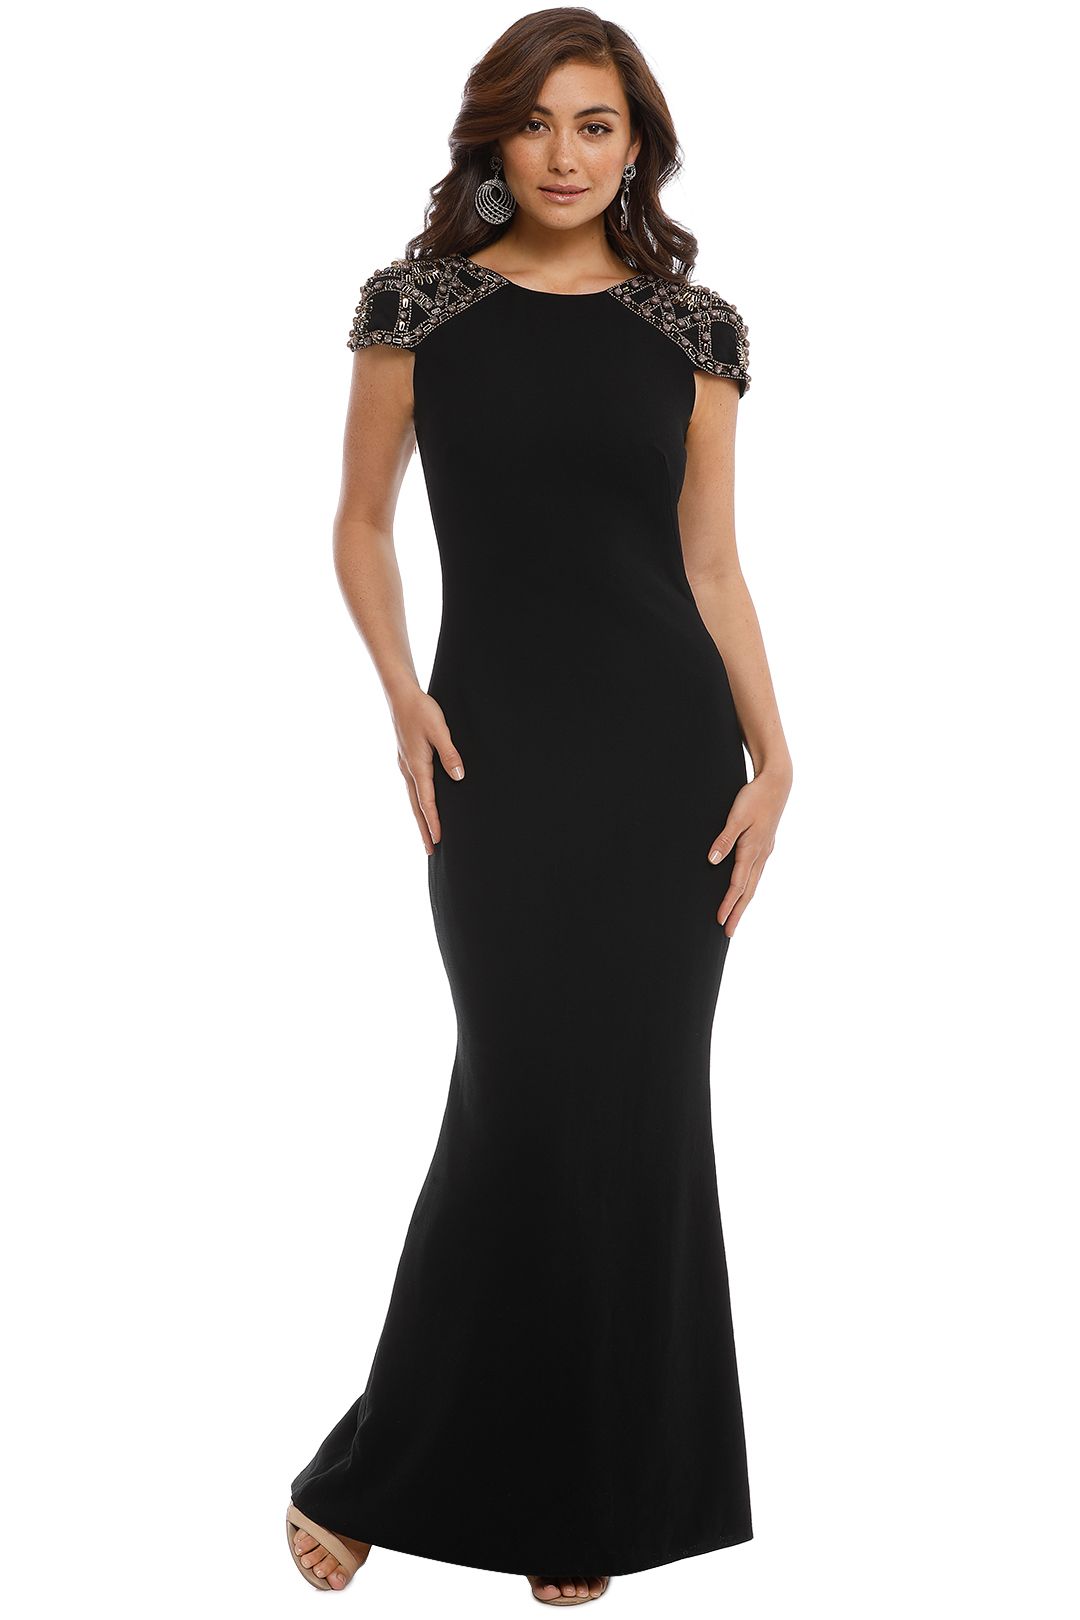 Badgley Mischka - Embellished Gown - Black - Front